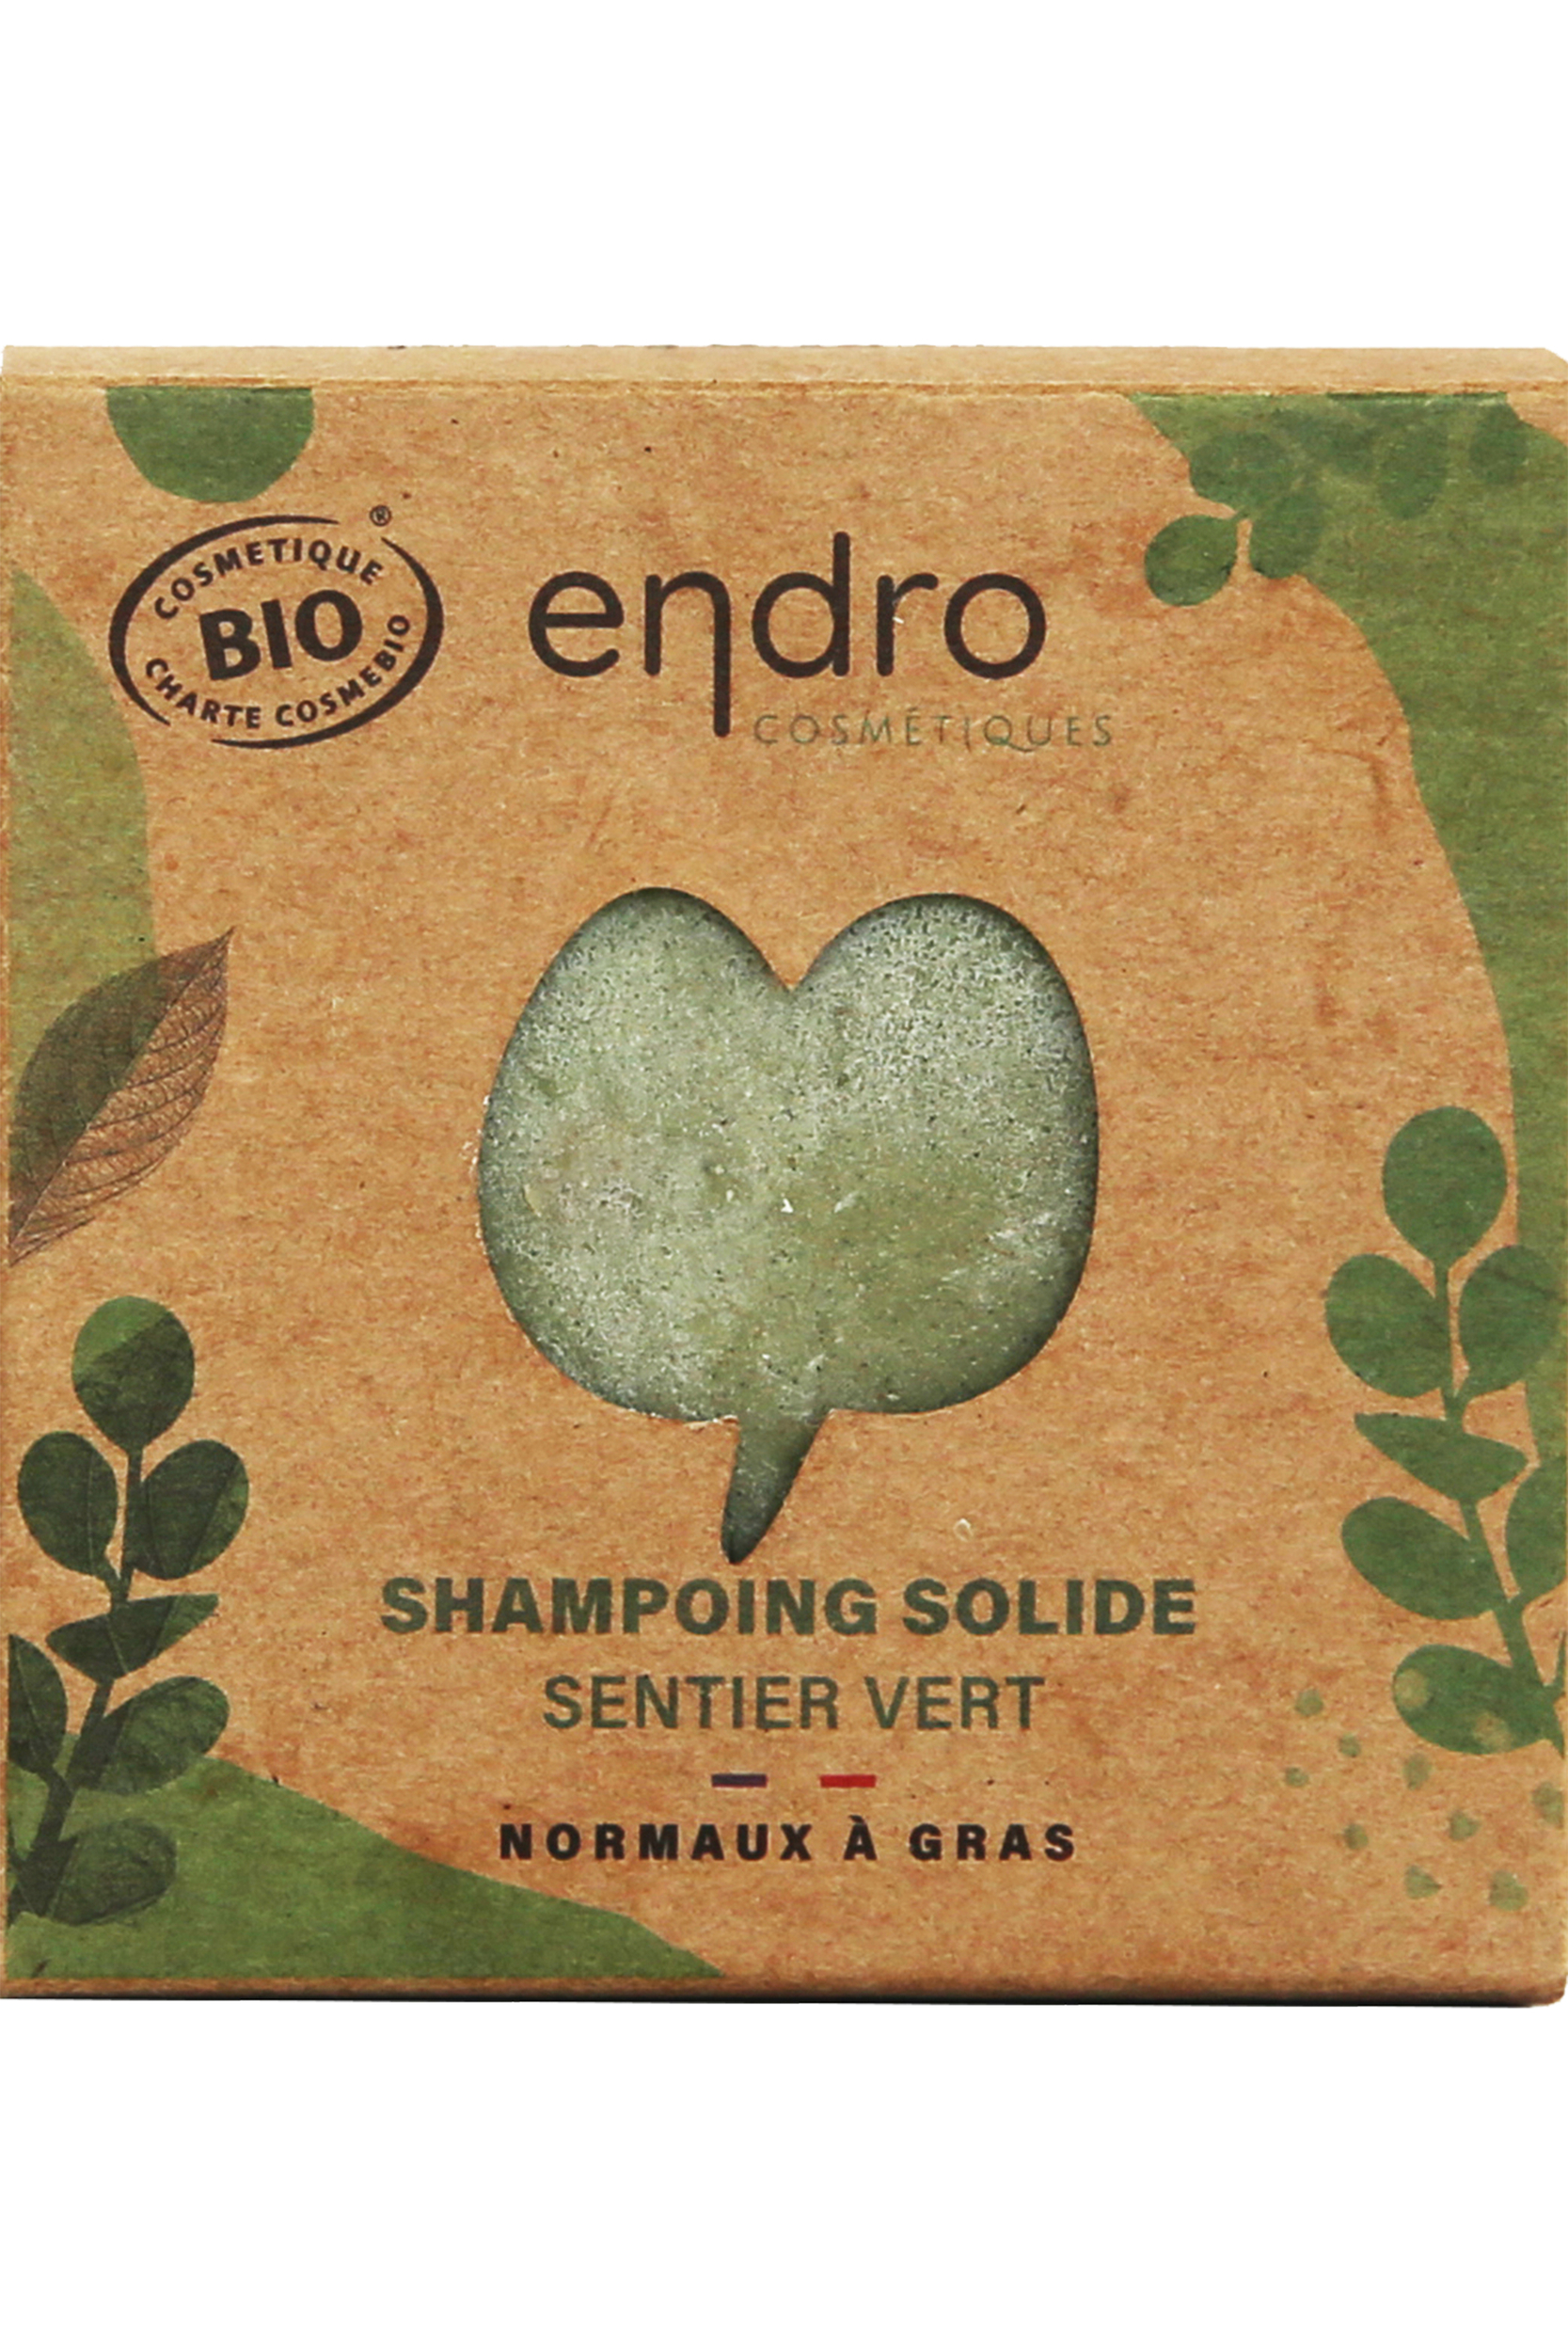 Shampoing solide Sentier vert - Cheveux gras